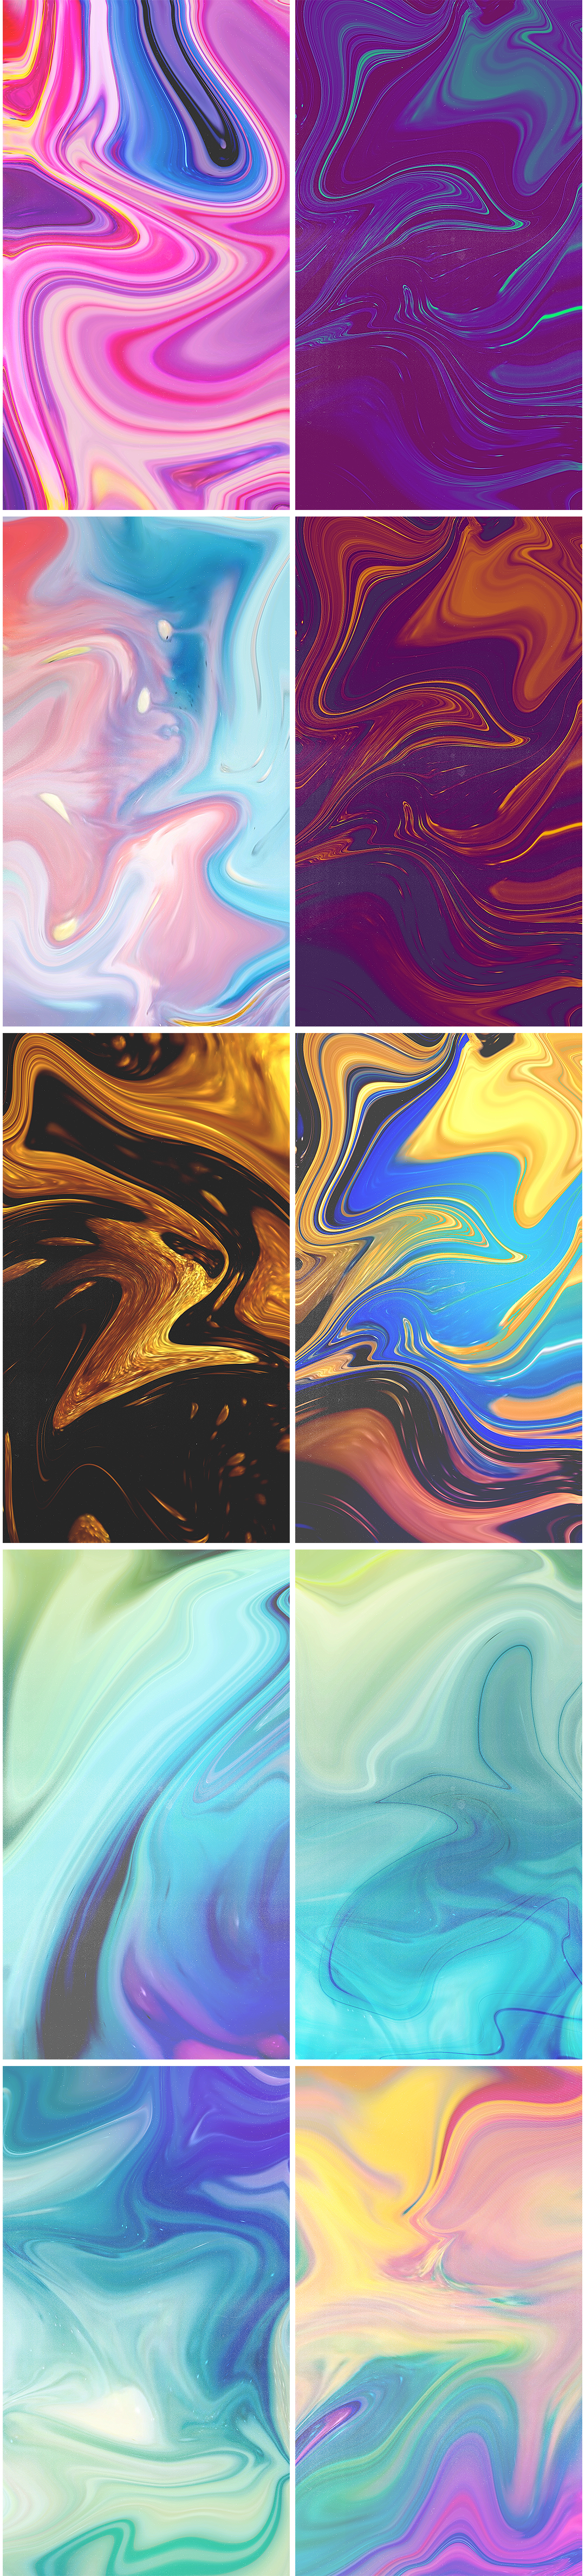 11款高清抽象丙烯酸流体背景纹理图片素材